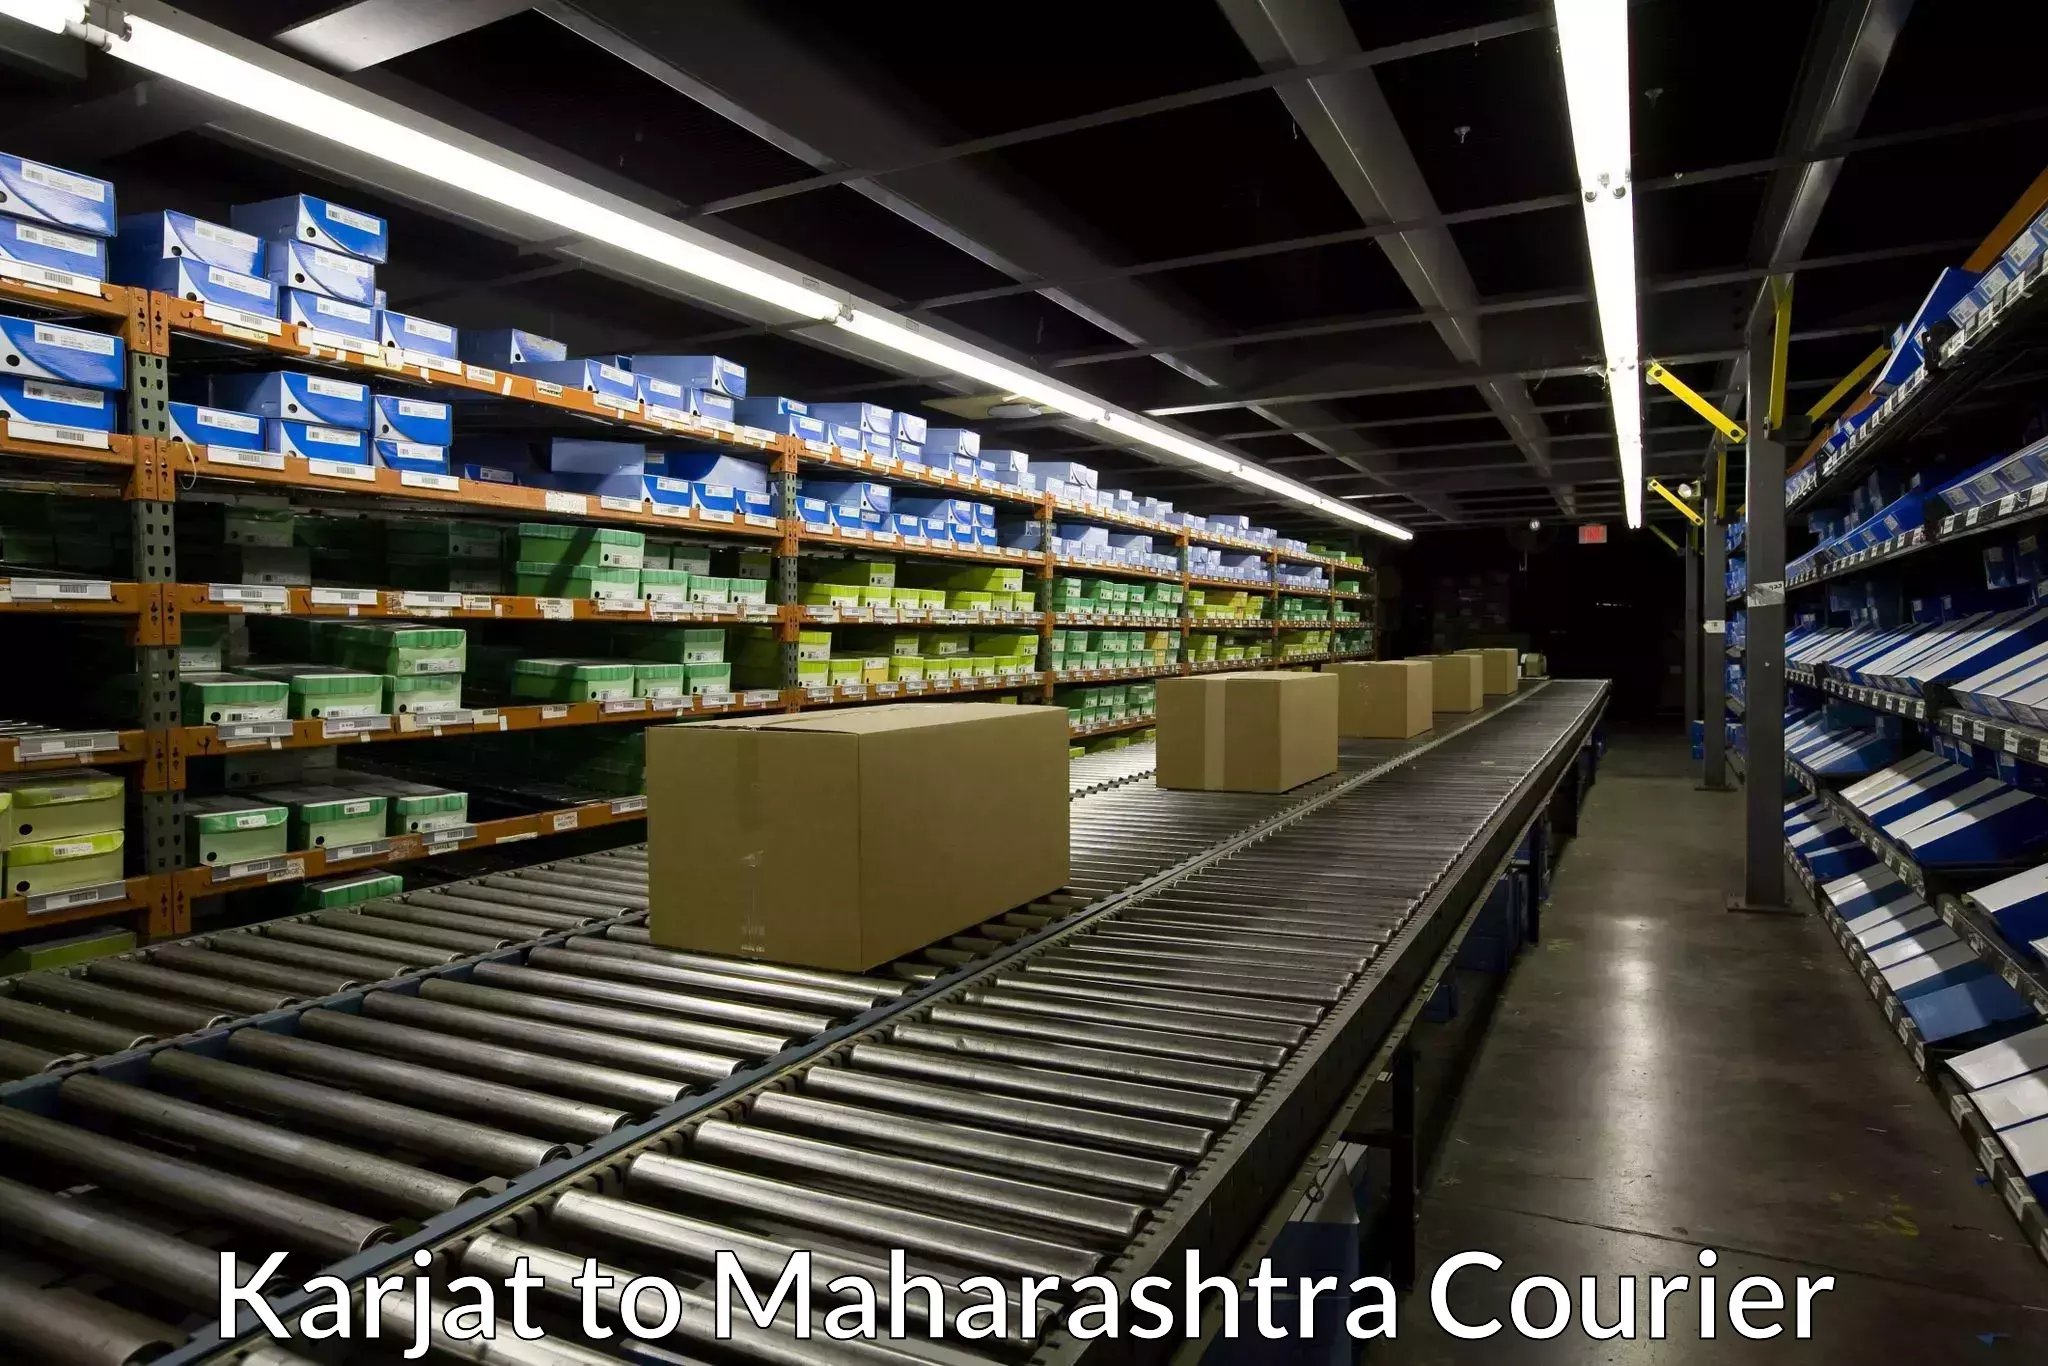 Door-to-door shipment in Karjat to Maharashtra